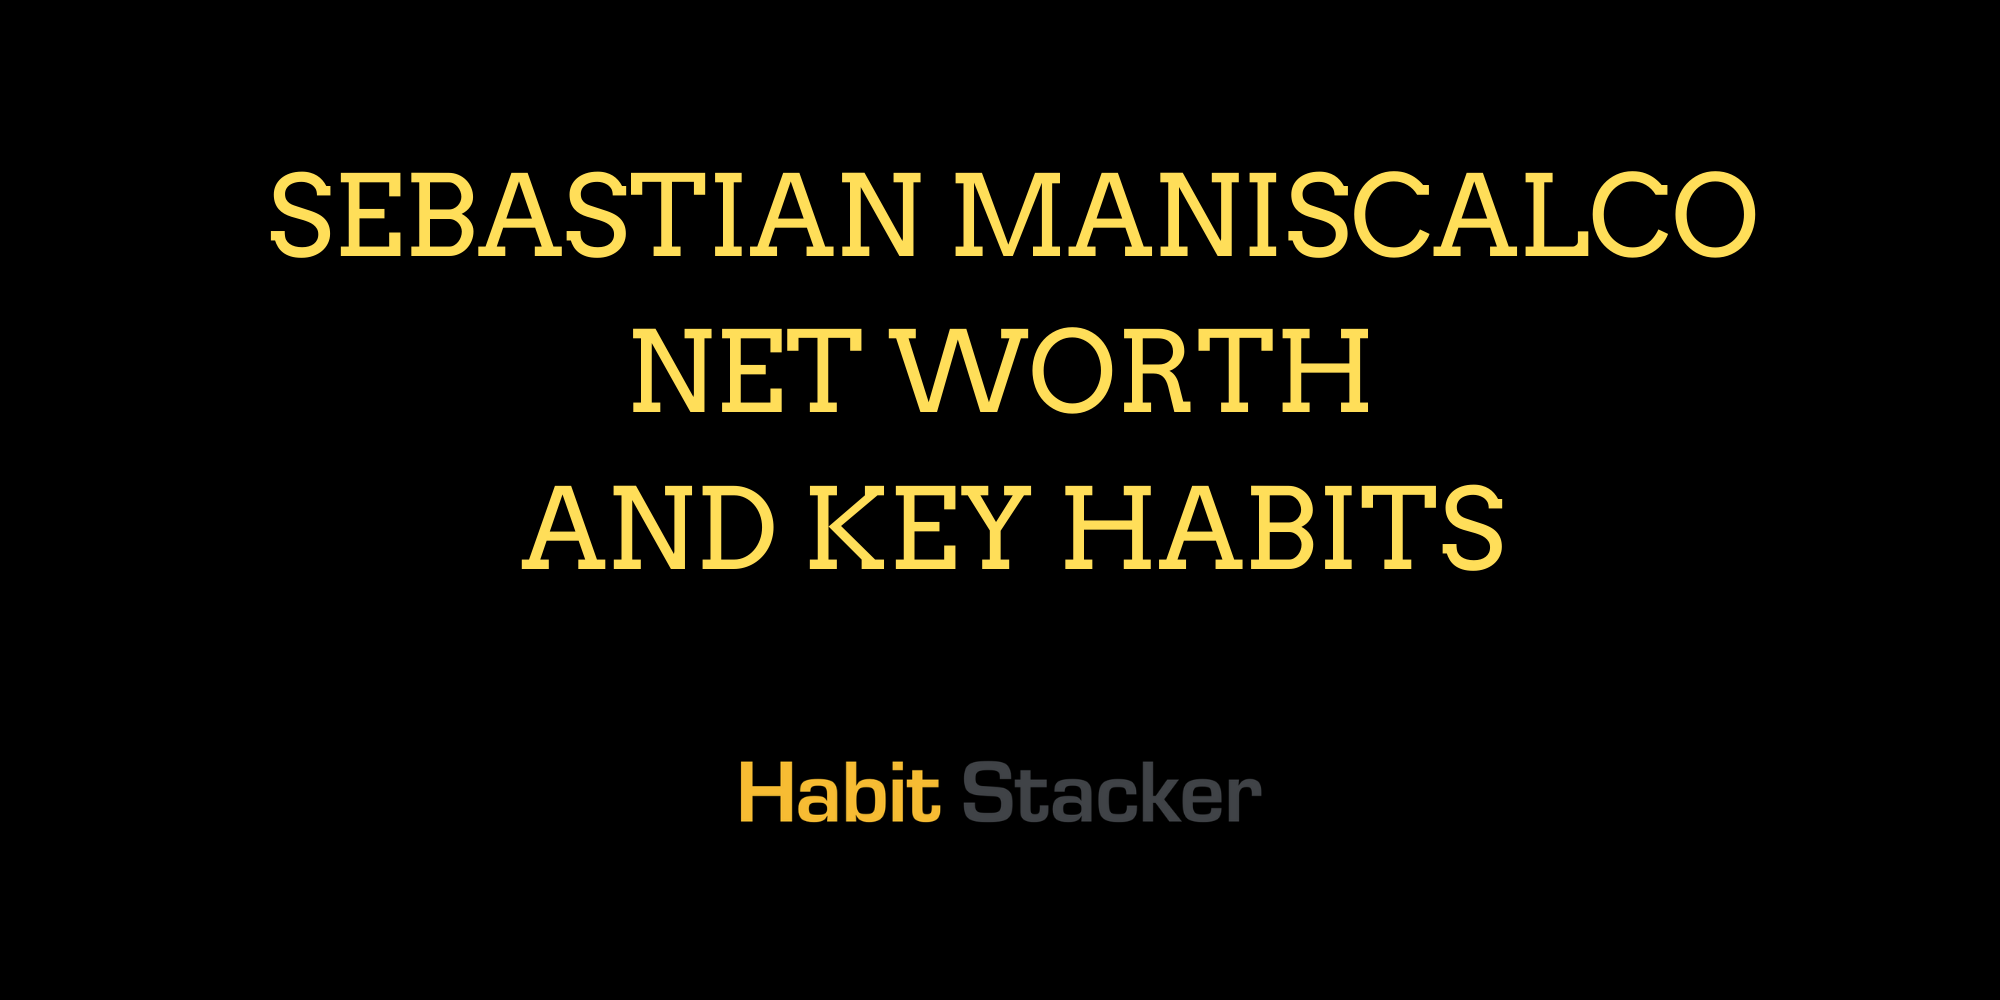 Sebastian Maniscalco Net Worth And Key Habits